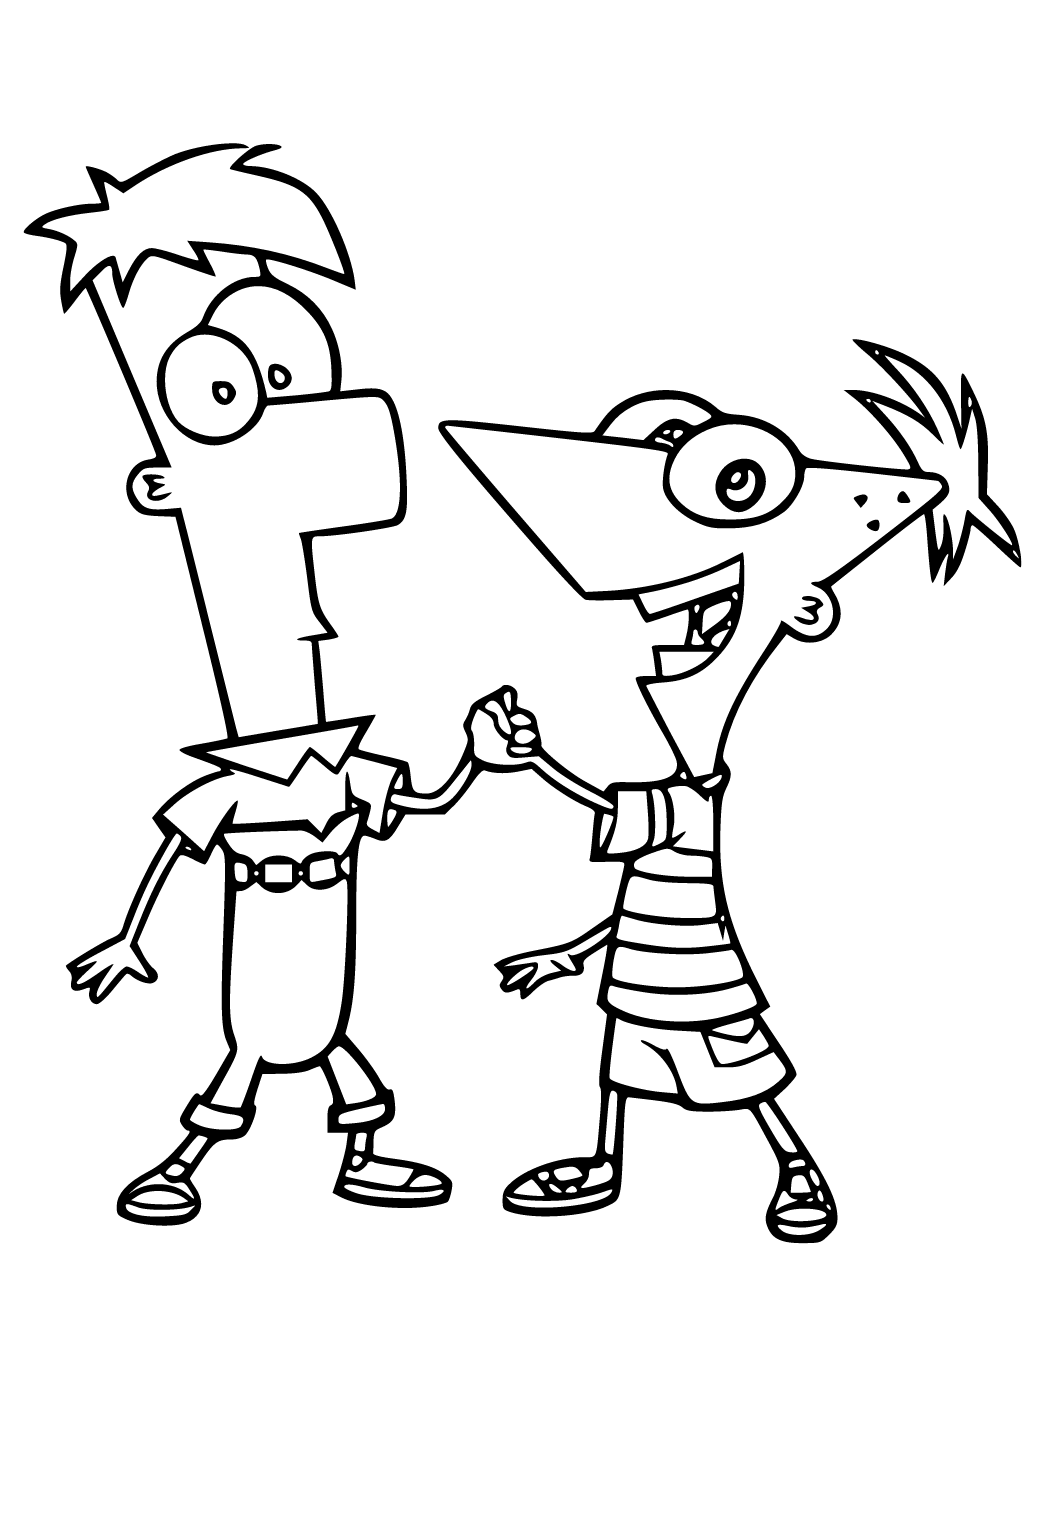 Phineas og Ferb